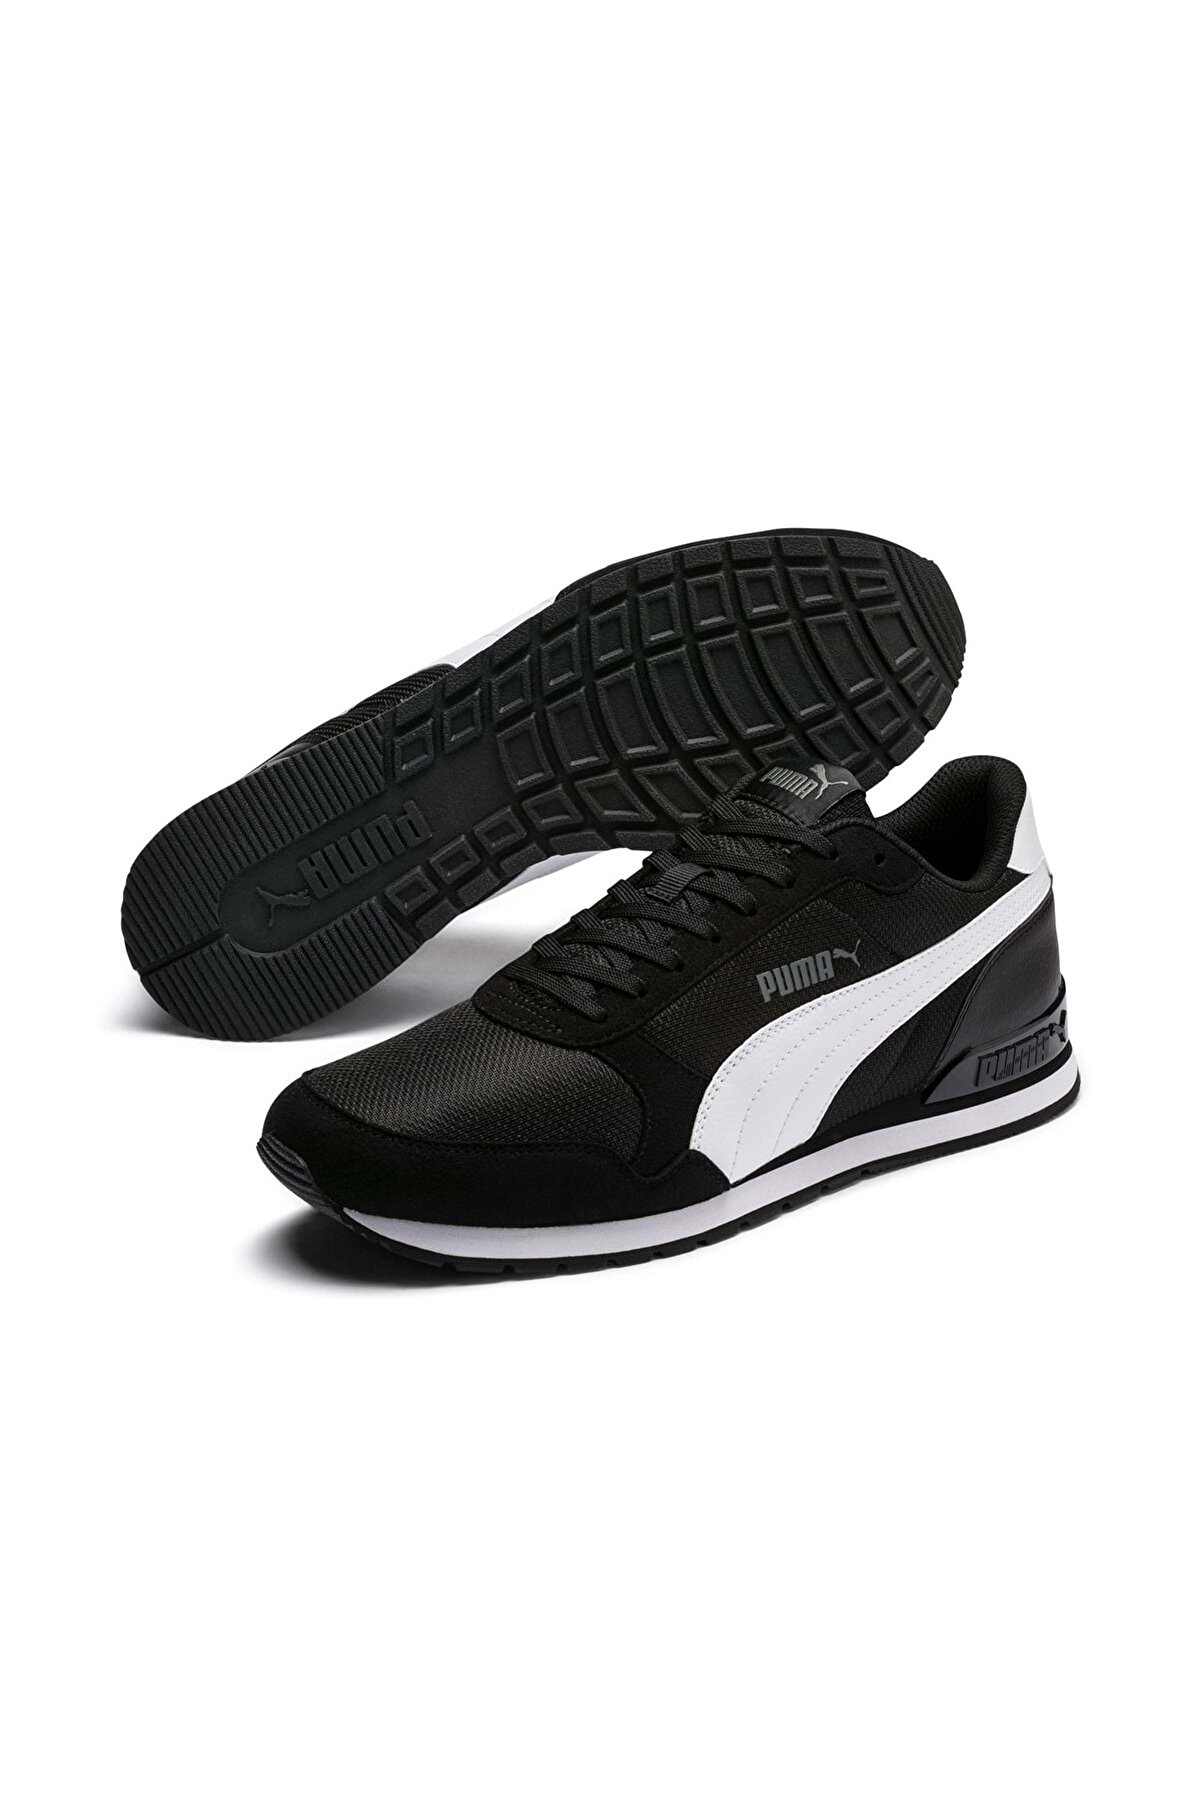 Puma St Runner V2 Mesh 367135-06 Unisex Spor Ayakkabı Siyah-beyaz